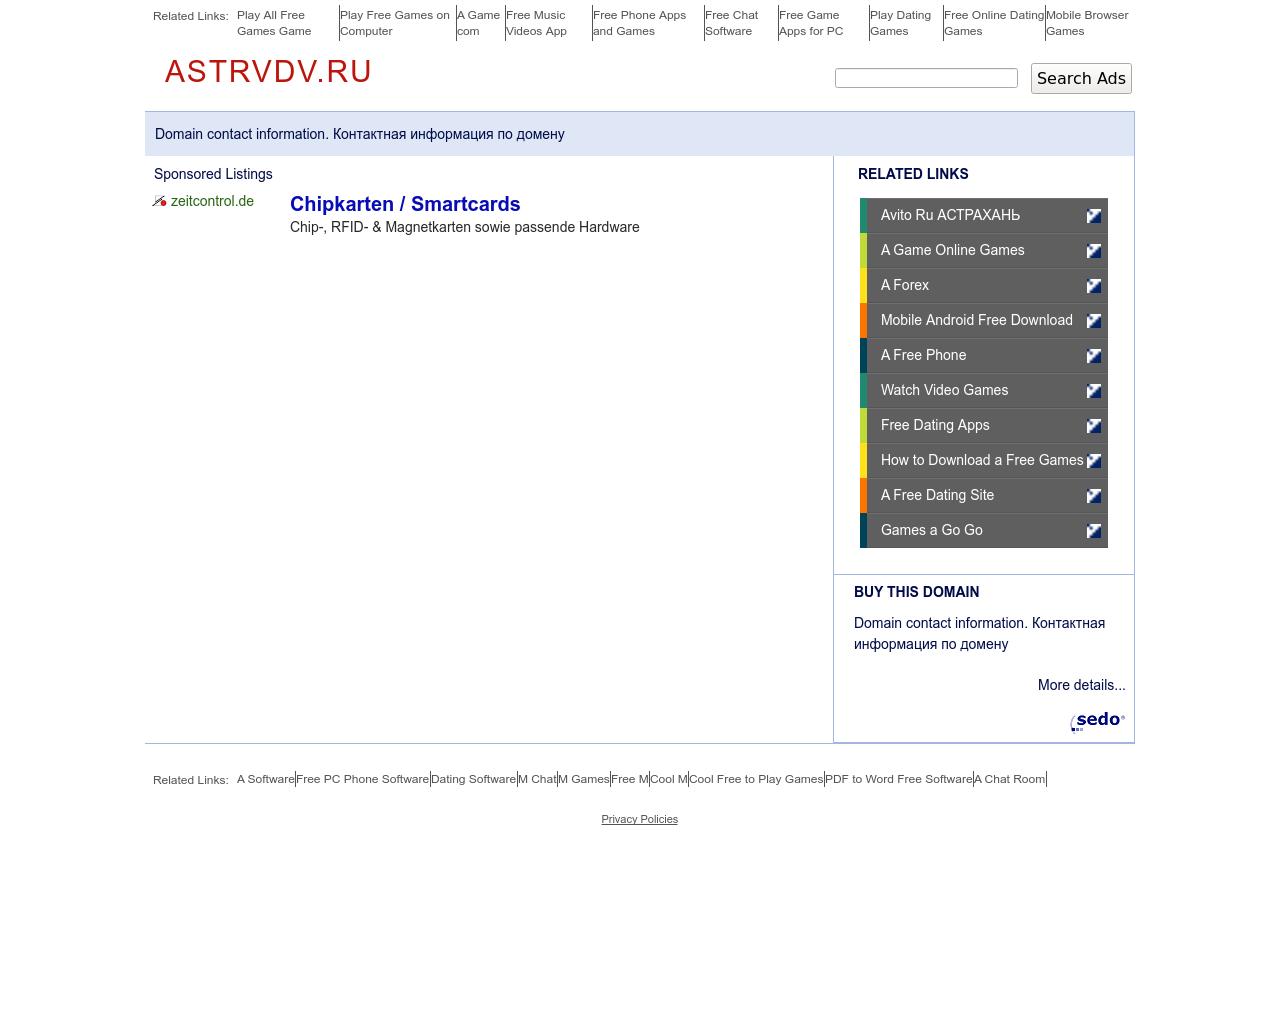 Изображение сайта astrvdv.ru в разрешении 1280x1024